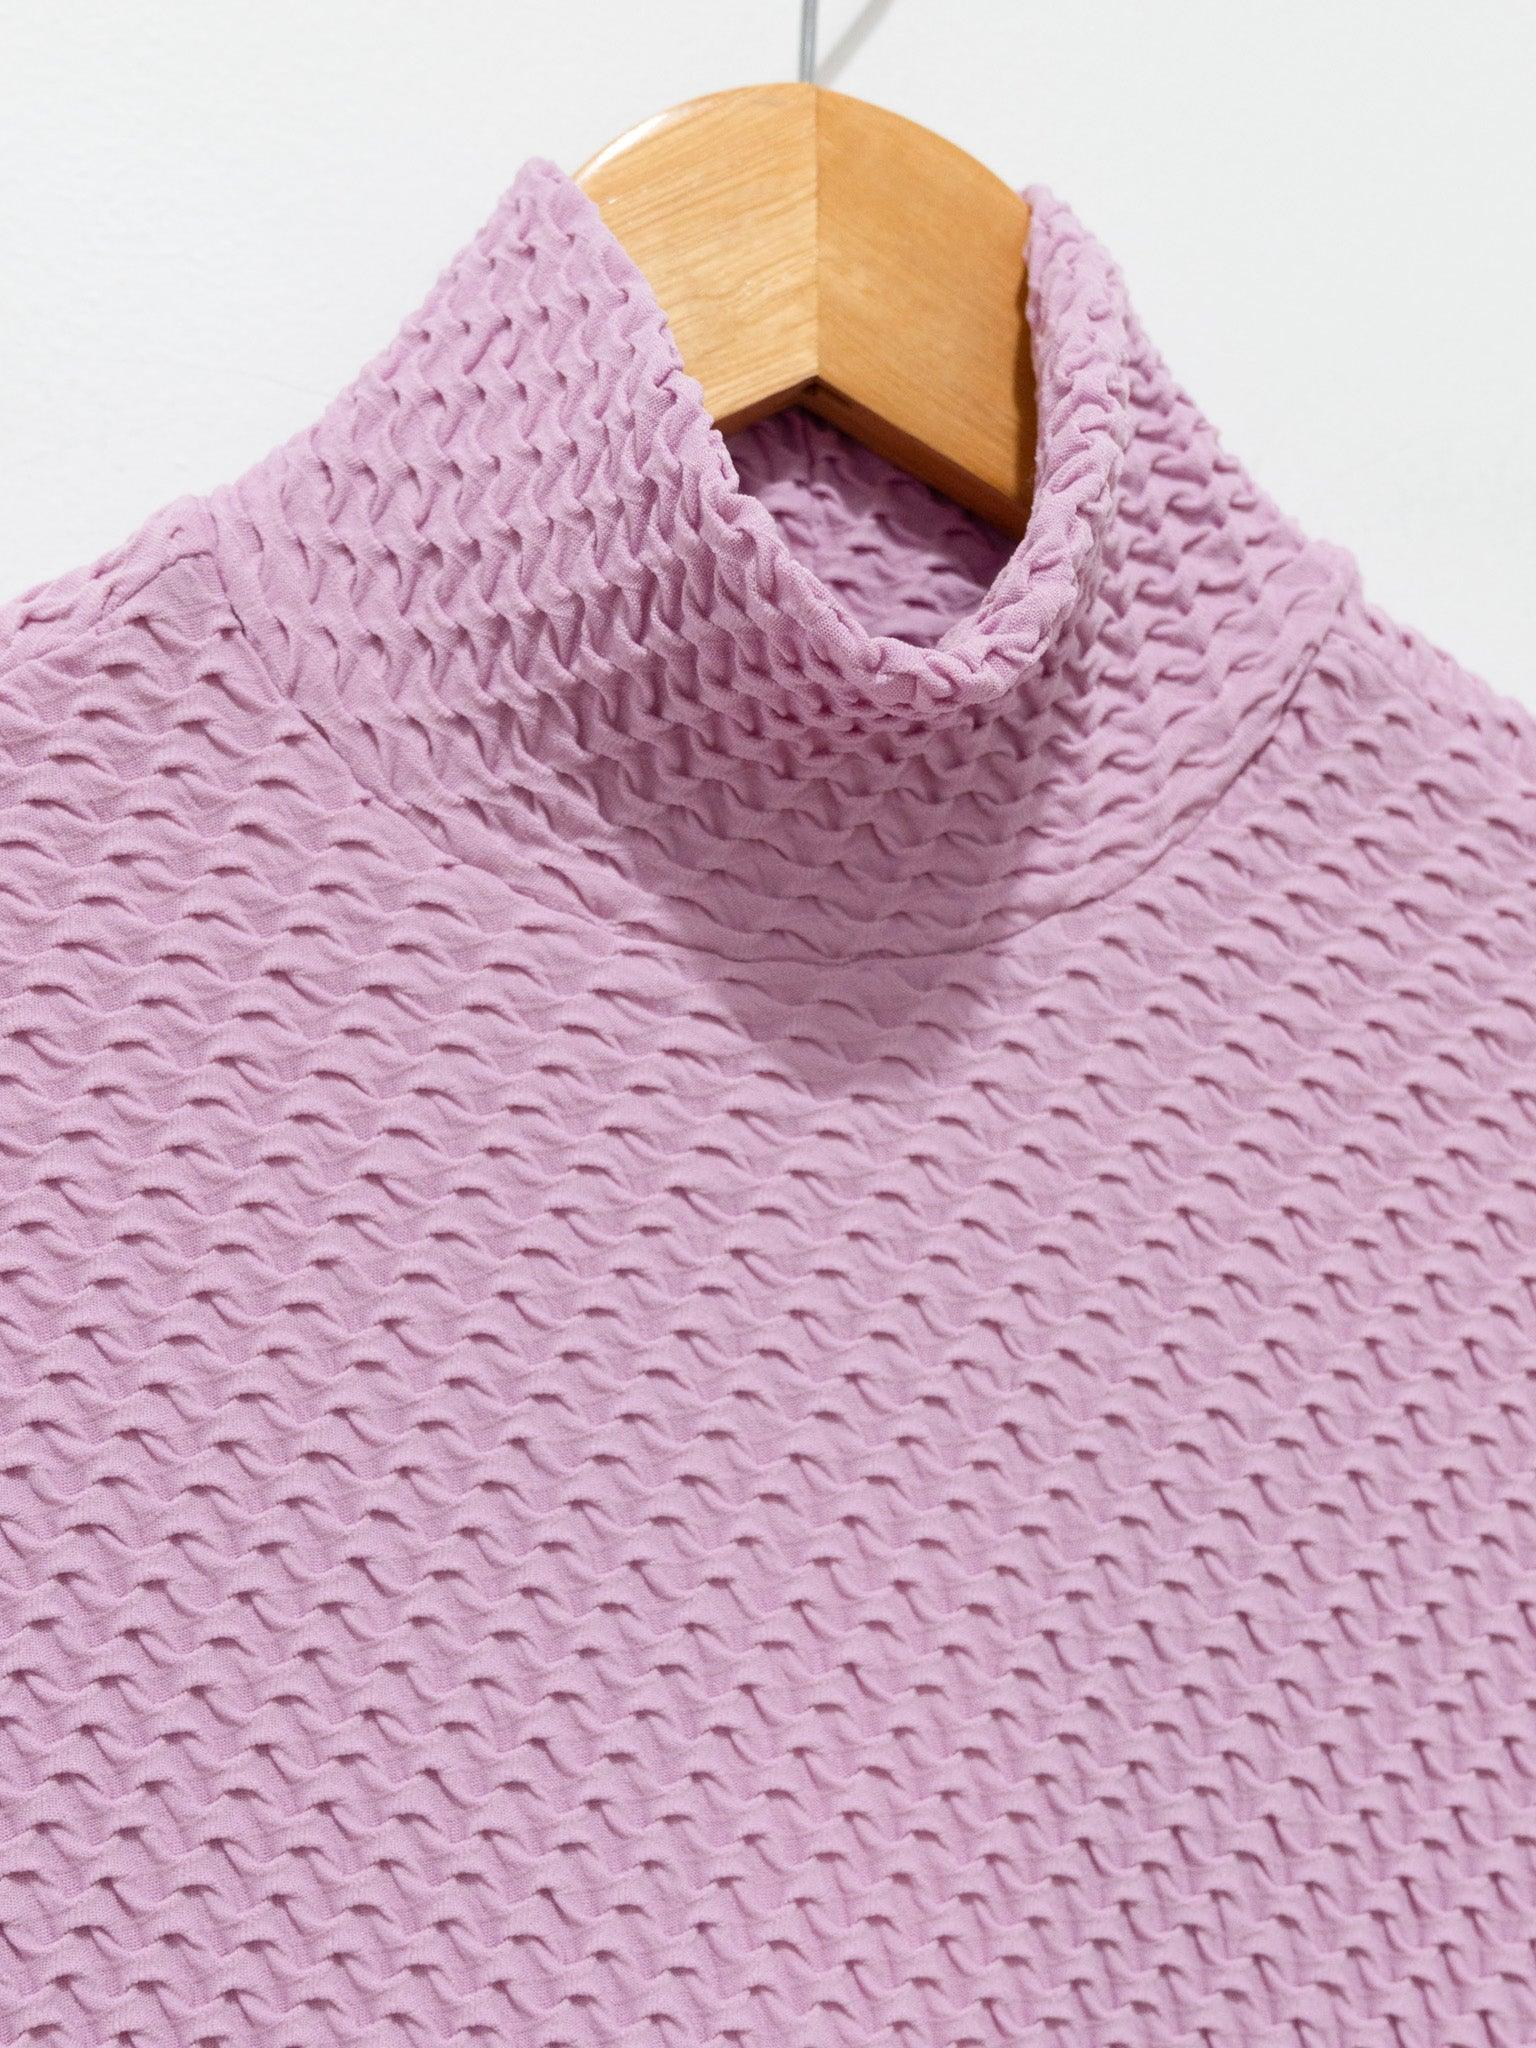 Namu Shop - Babaco Shrink Knit Turtleneck - Lavender Pink